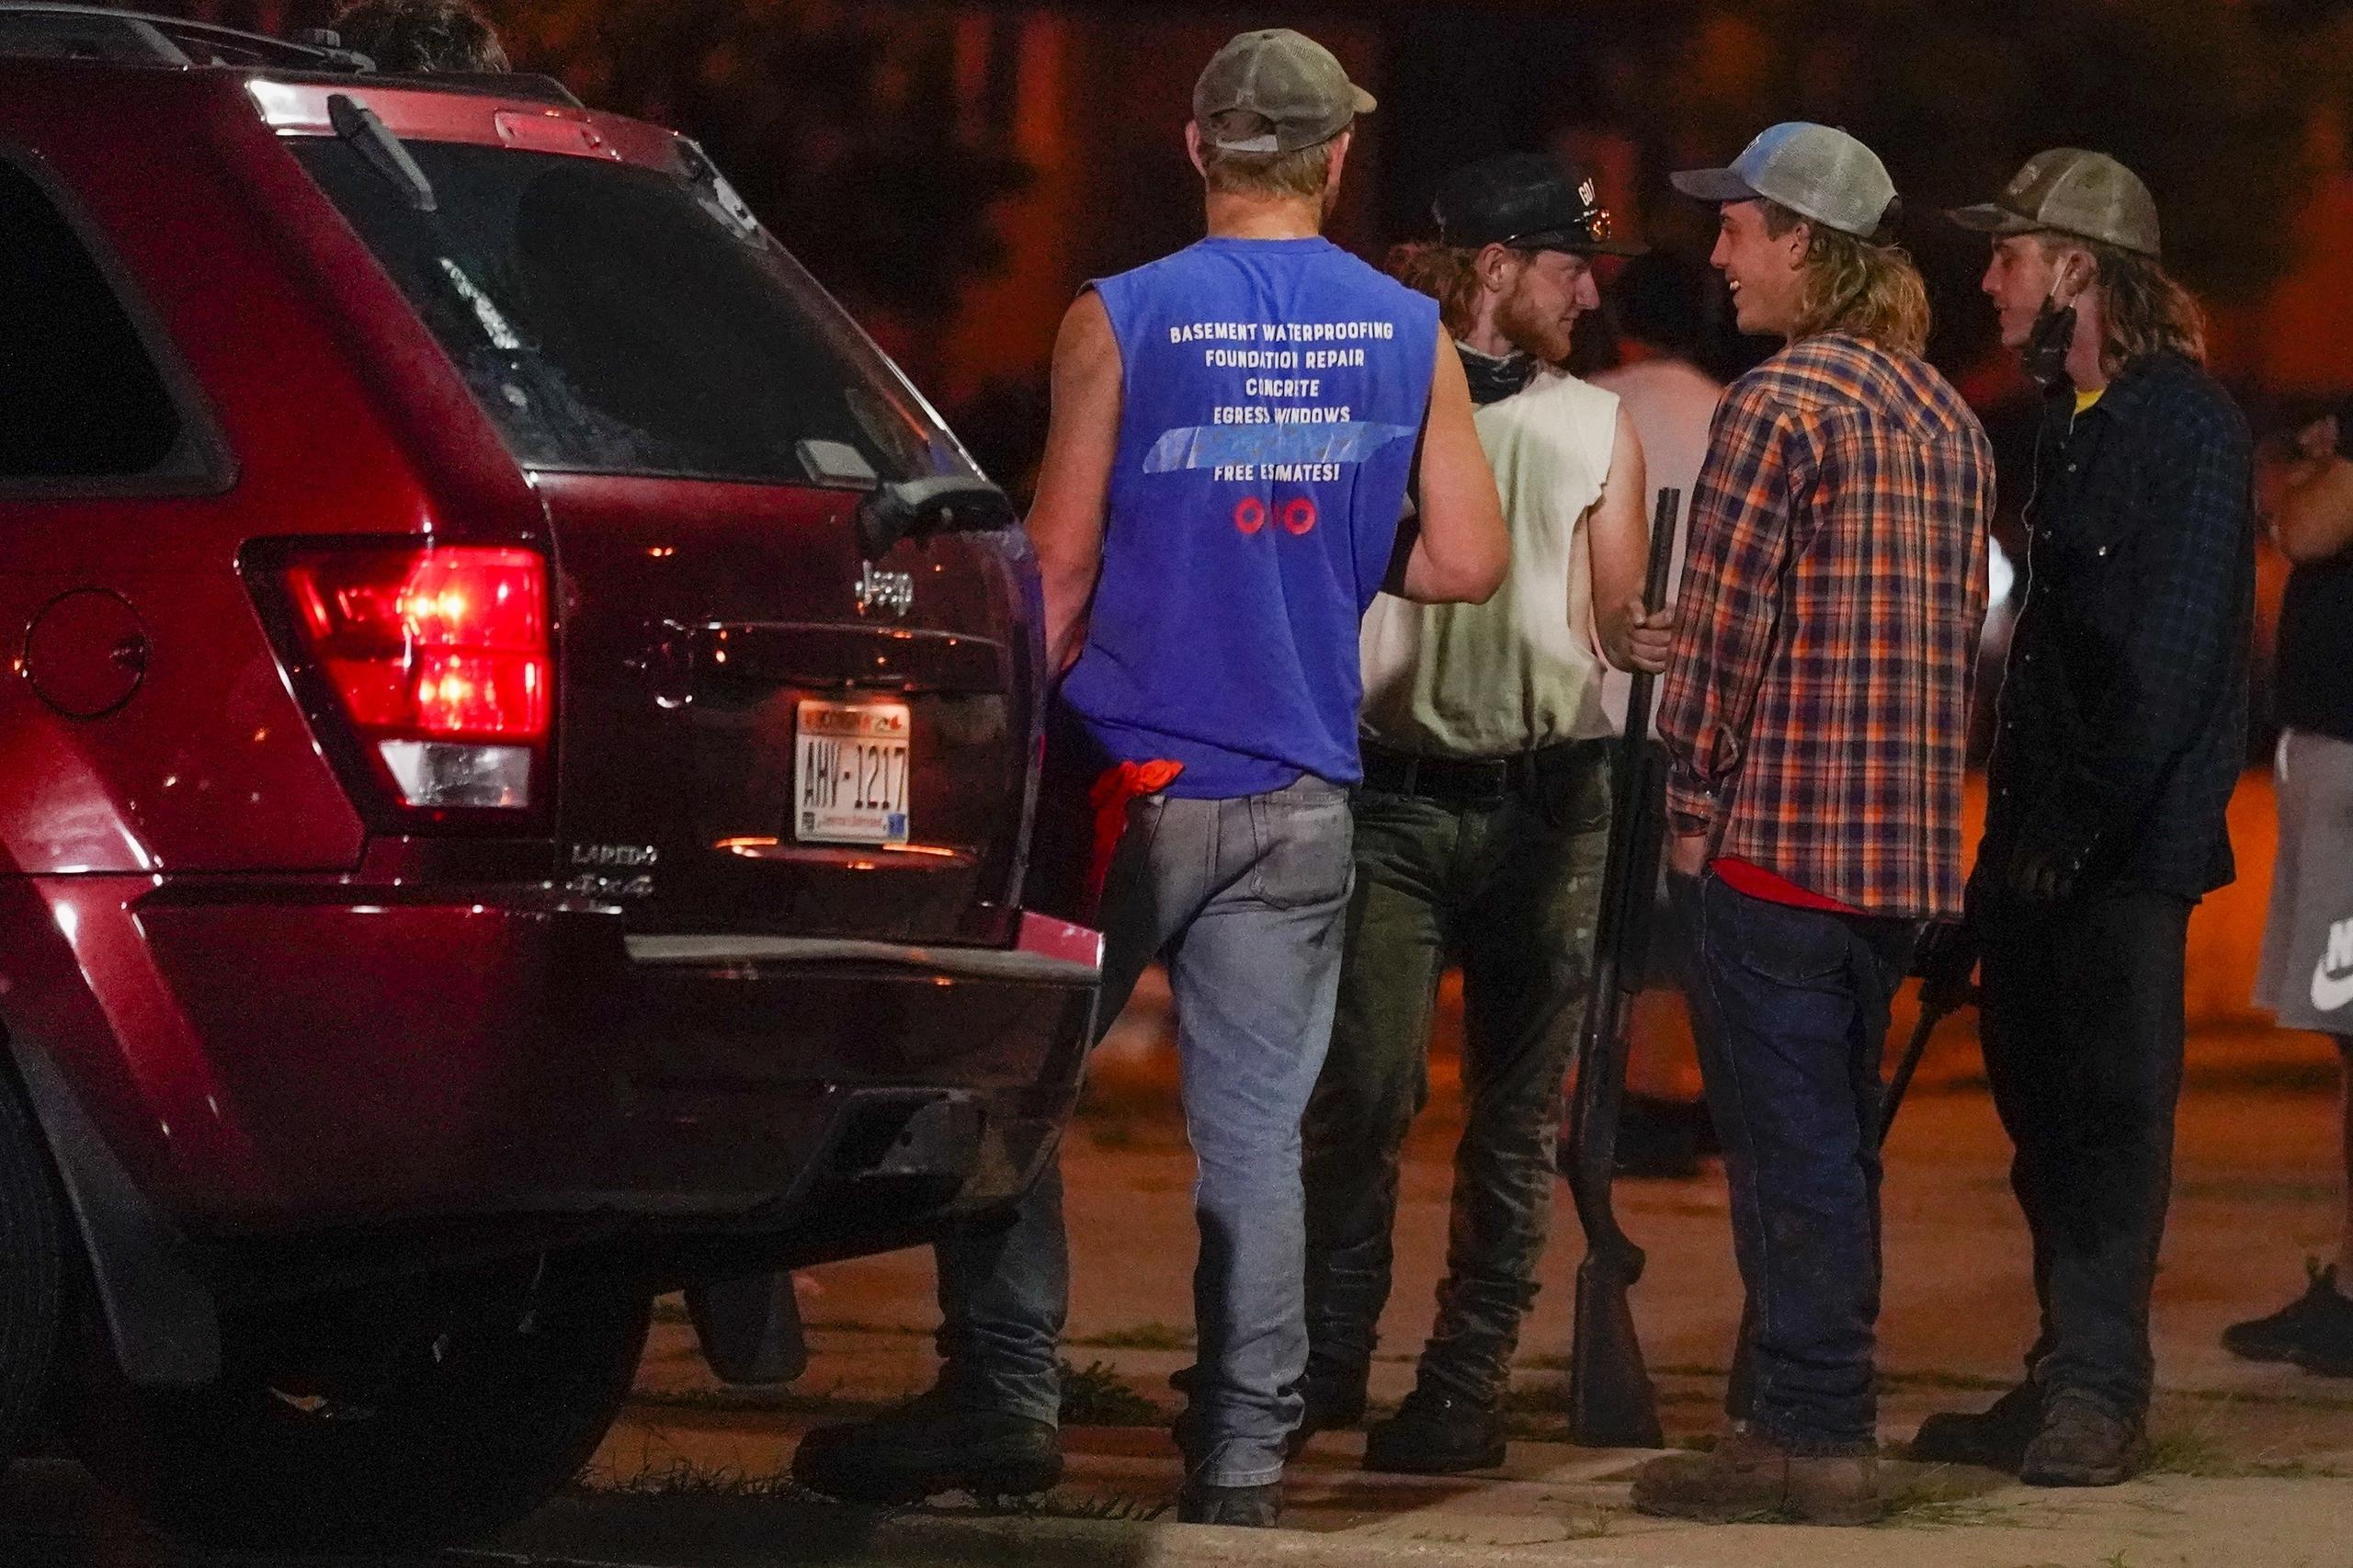 Individuos armados observan una manifestación de protesta por la muerte de Jacob Blake a manos de la policía en Kenosha, Wisconsin.